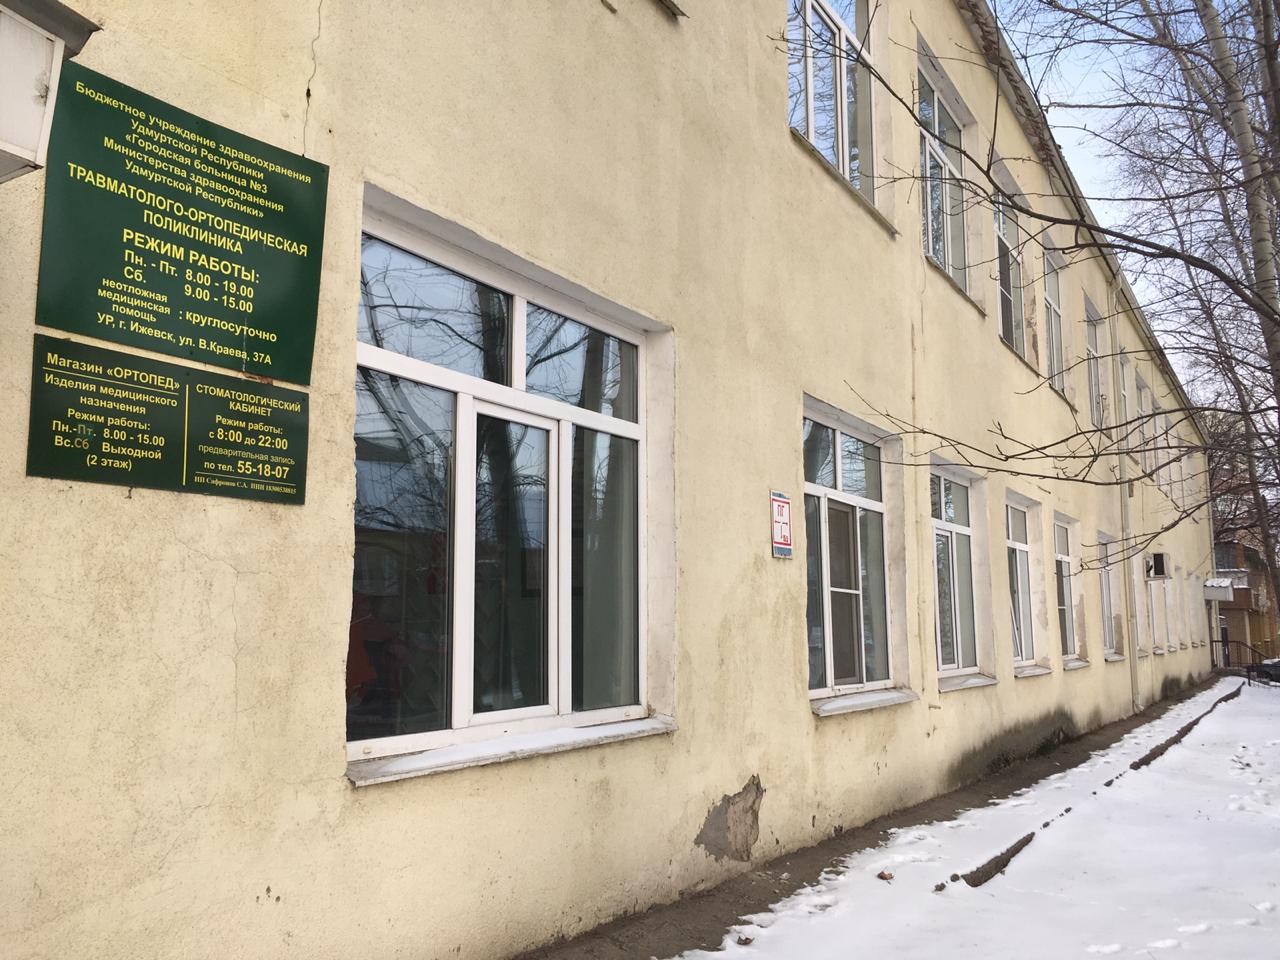 

Новое помещение для травматологии в Ижевске выберут до конца года

